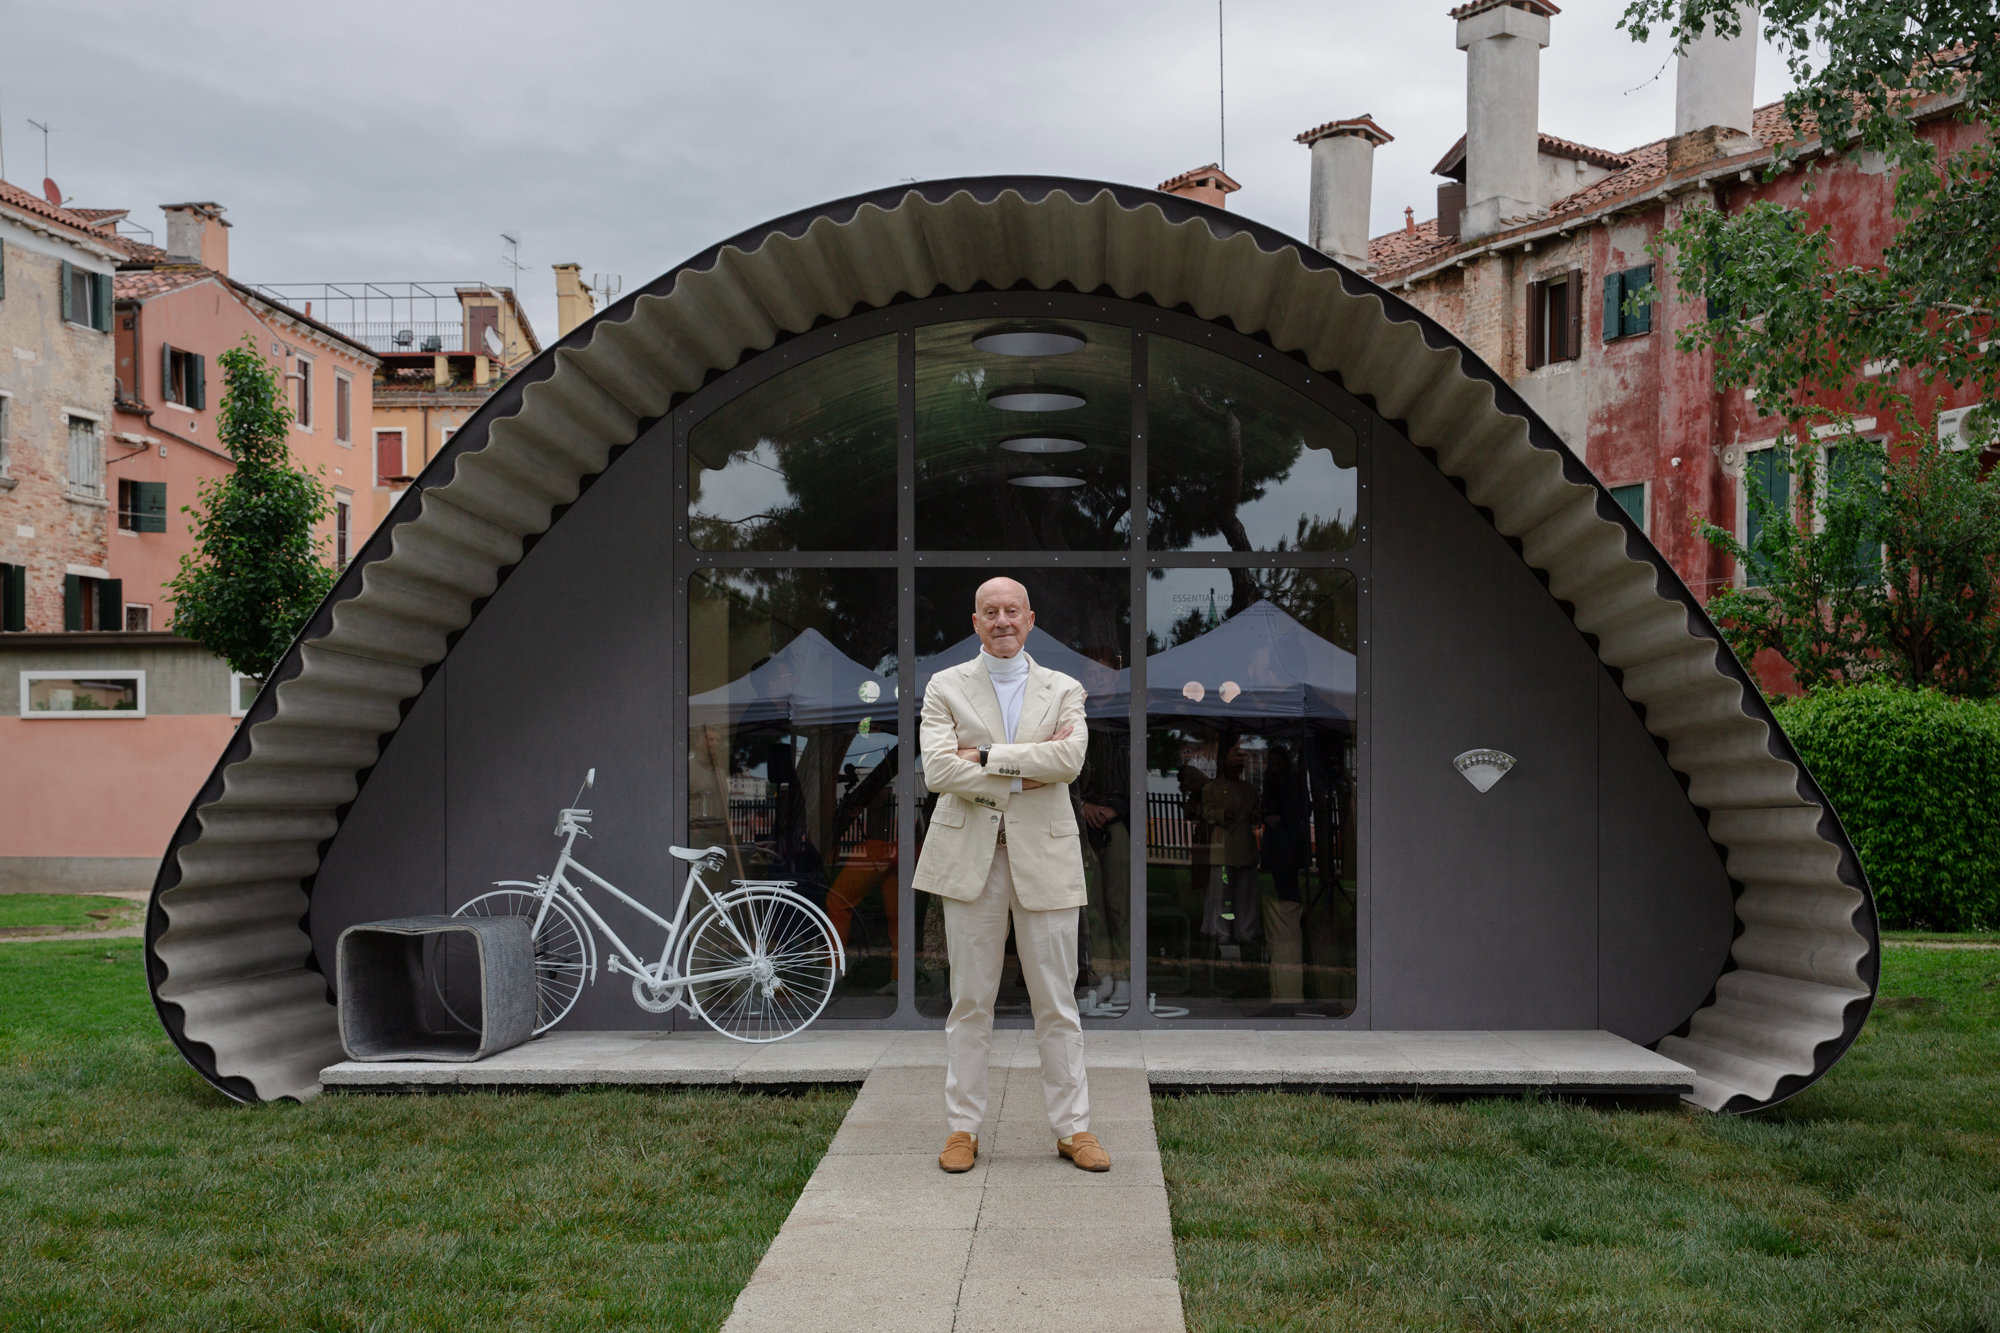 Norman foster junto al prototipo presentado en la Bienal de Arquitectura de Venecia. Foto: Pablo Gómez Ogando